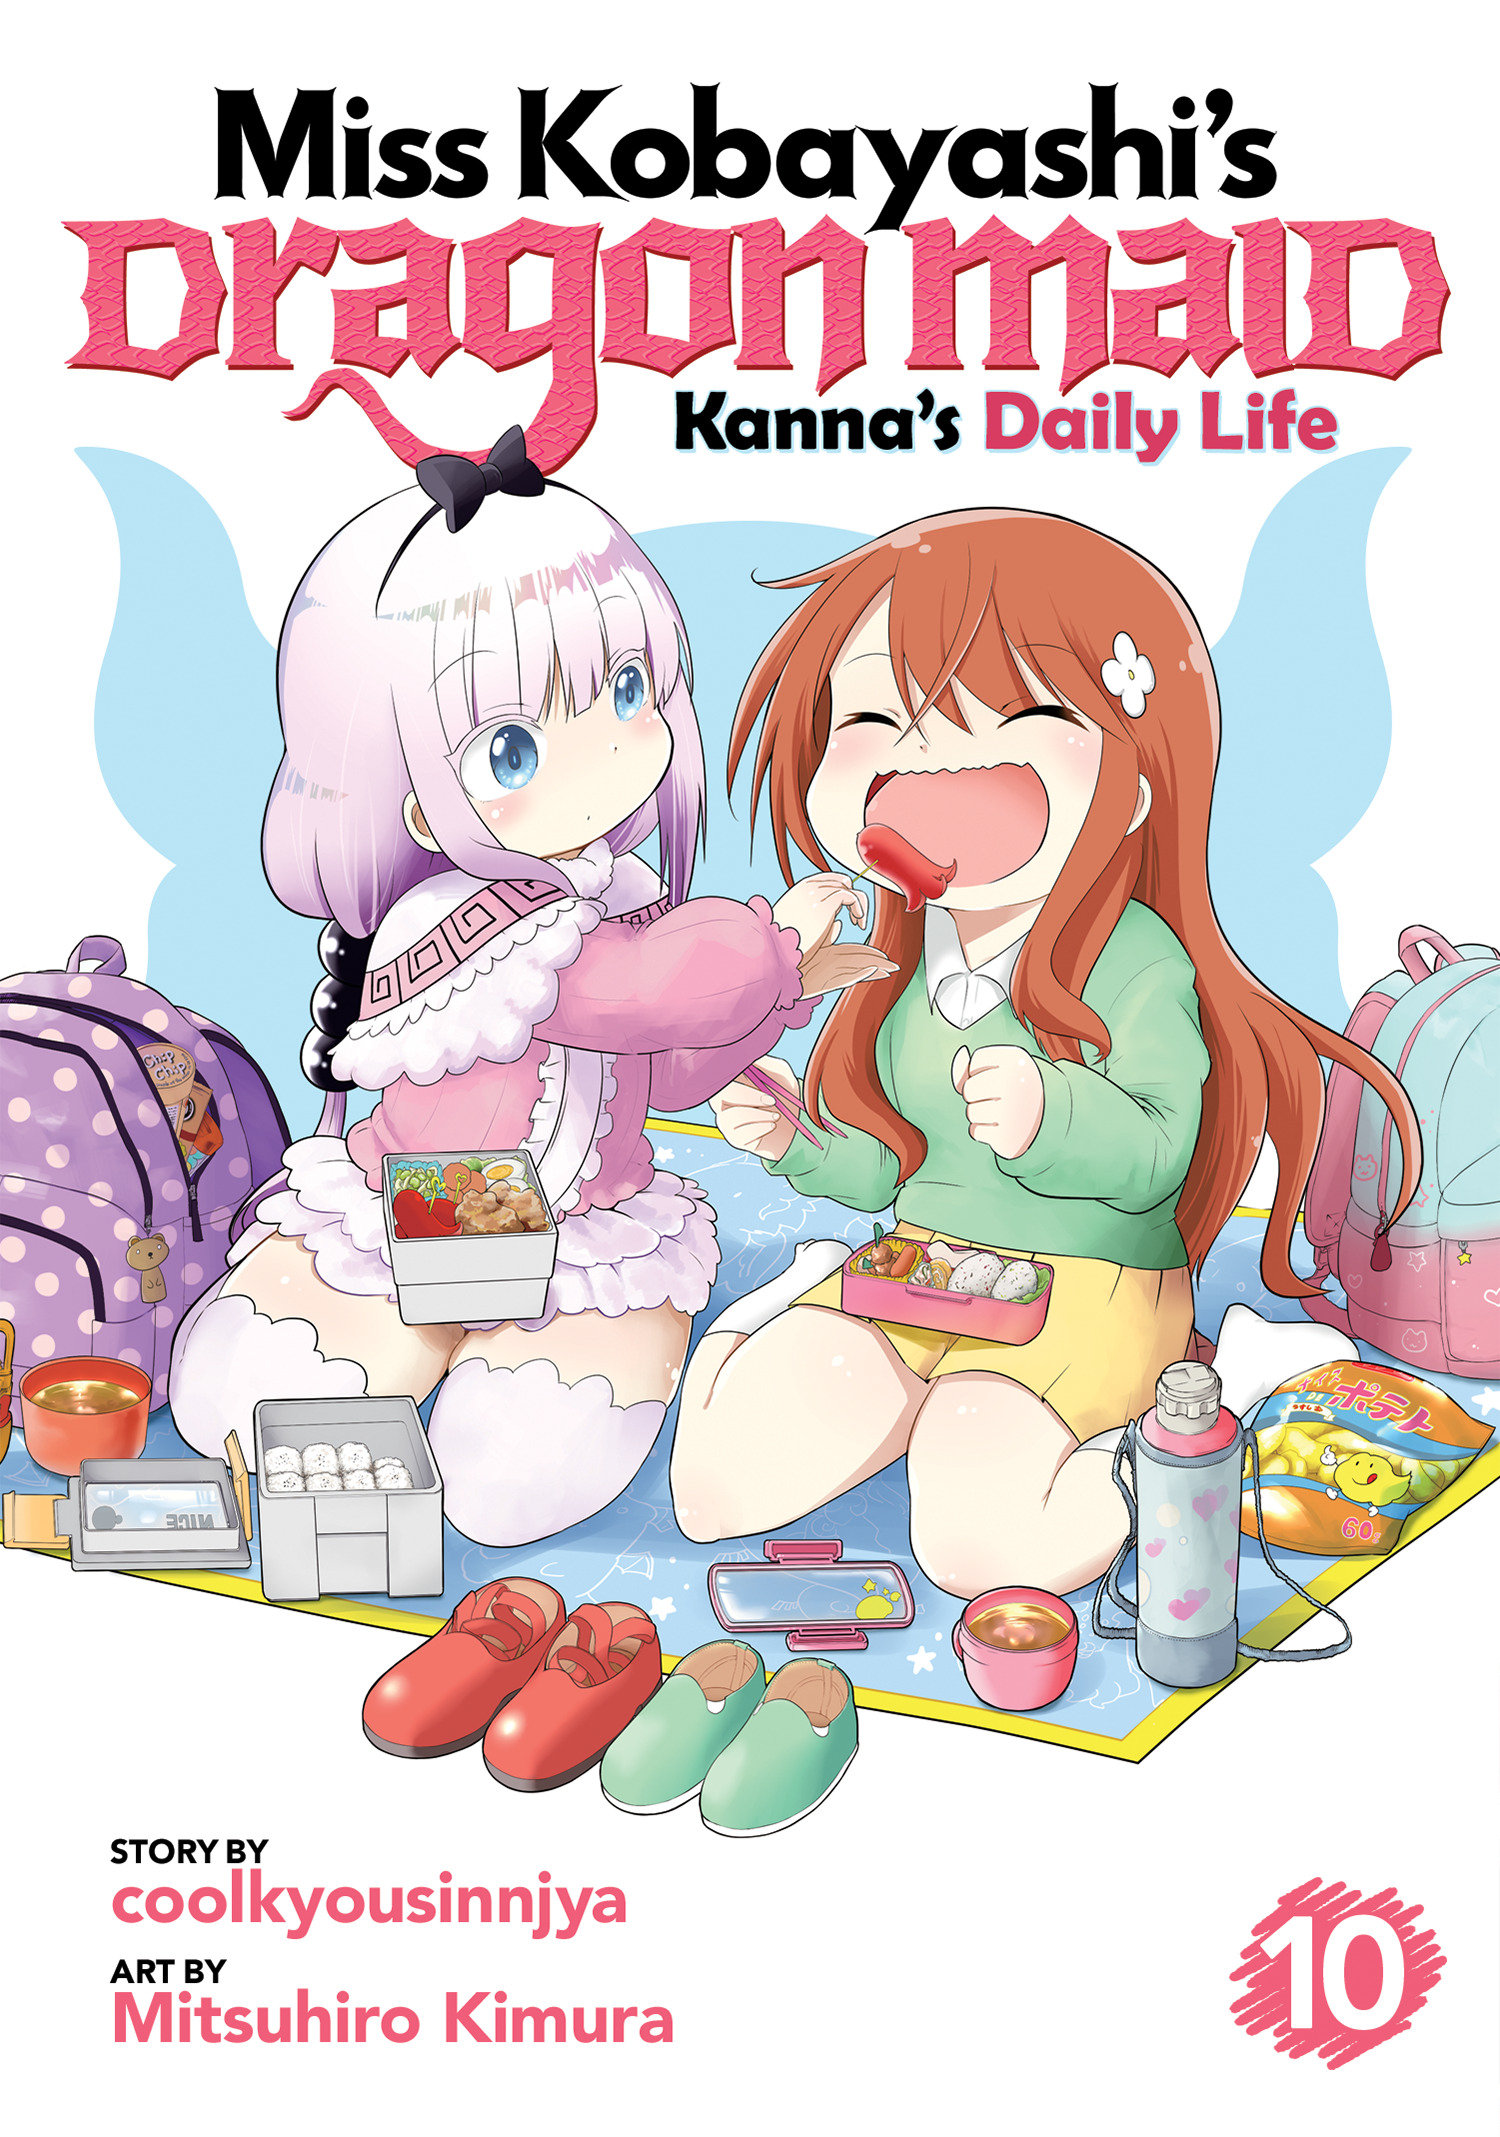 Miss Kobayashi's Dragon Maid Kanna Daily Life Manga Volume 10